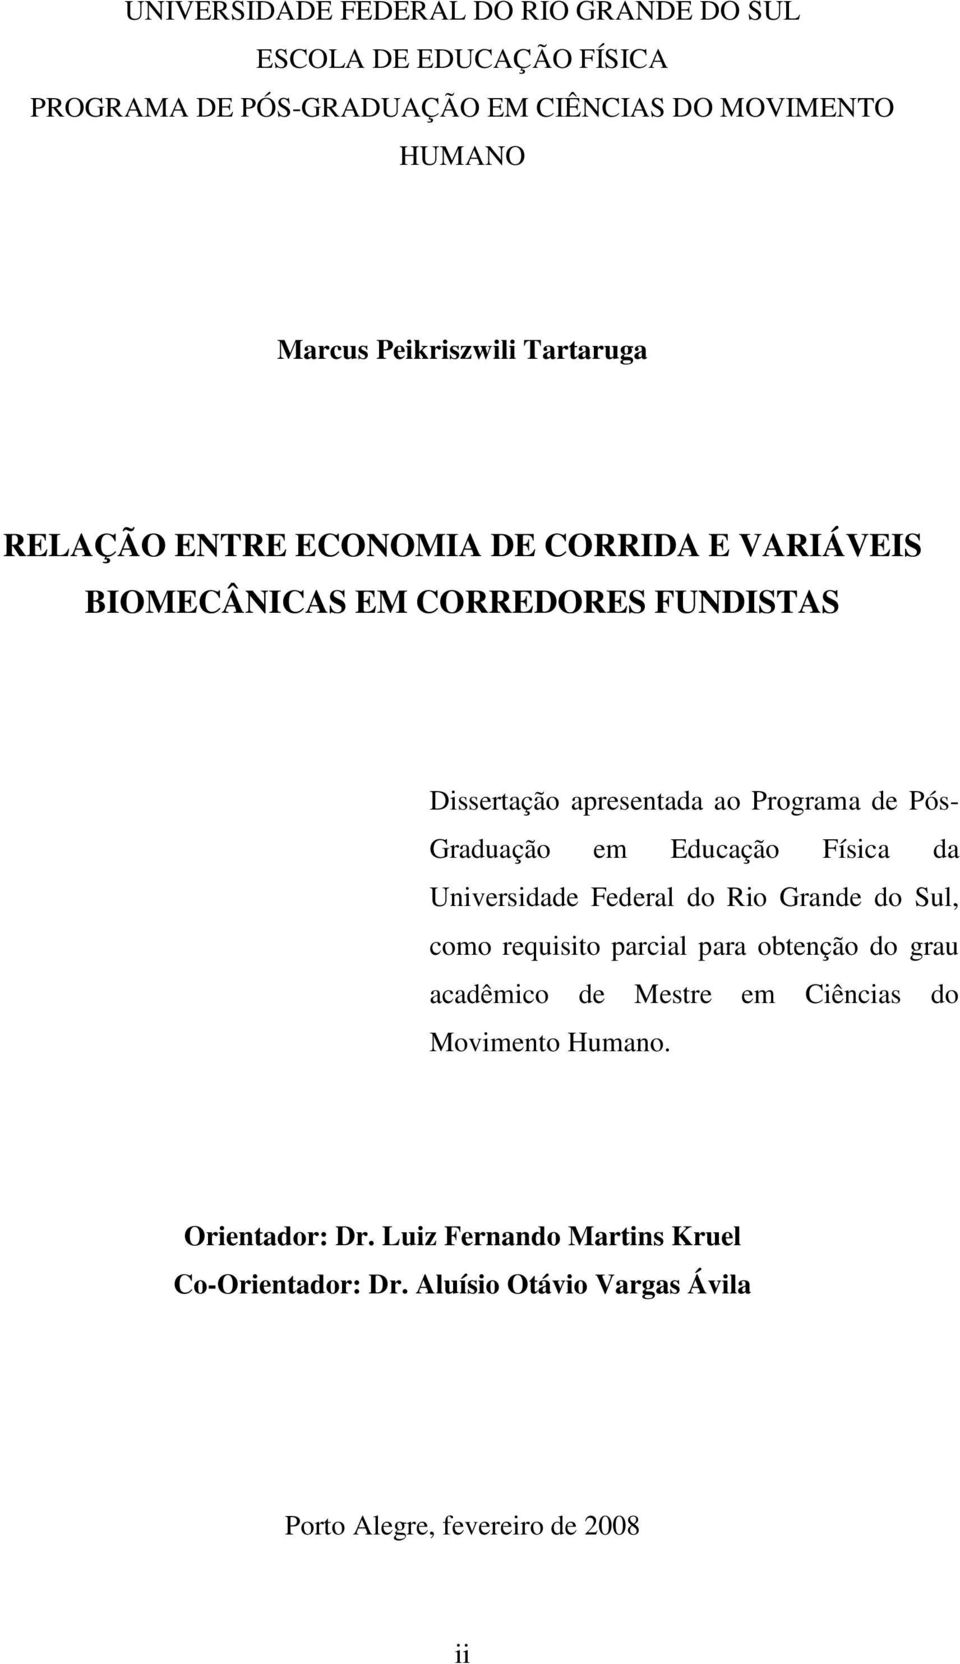 Graduação em Educação Física da Universidade Federal do Rio Grande do Sul, como requisito parcial para obtenção do grau acadêmico de Mestre em